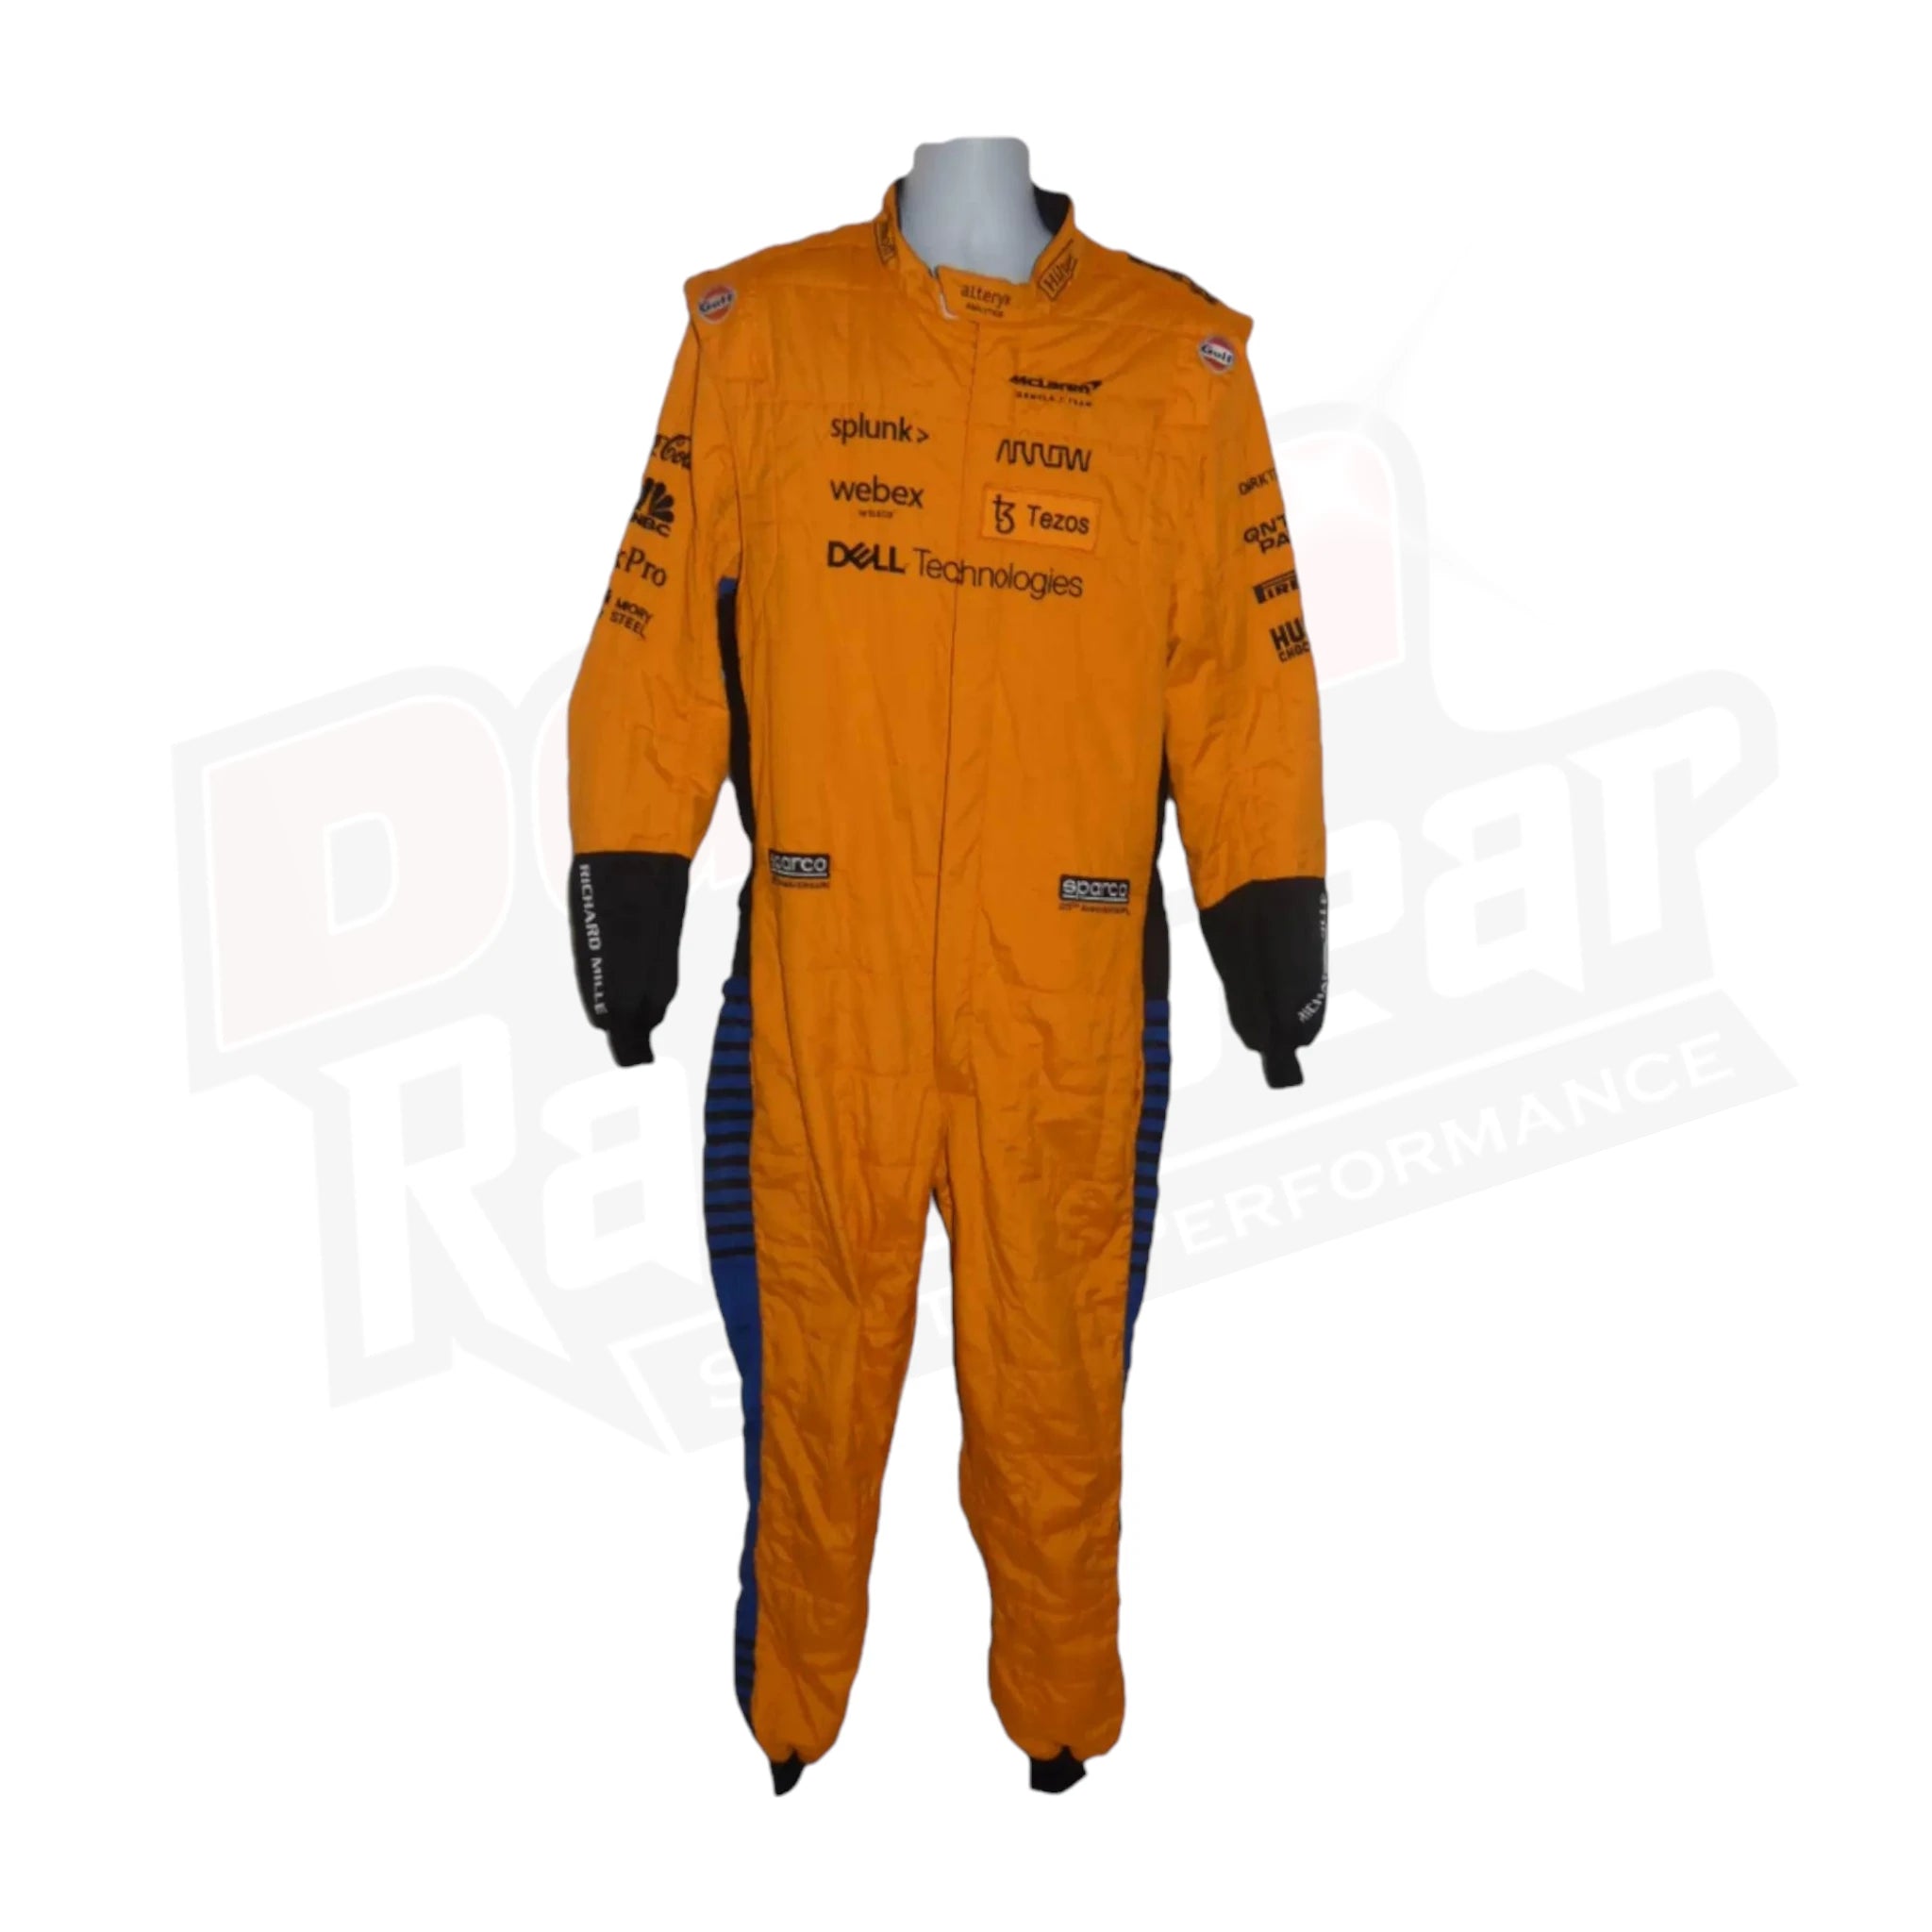 Mclaren 2021 pit crew suit